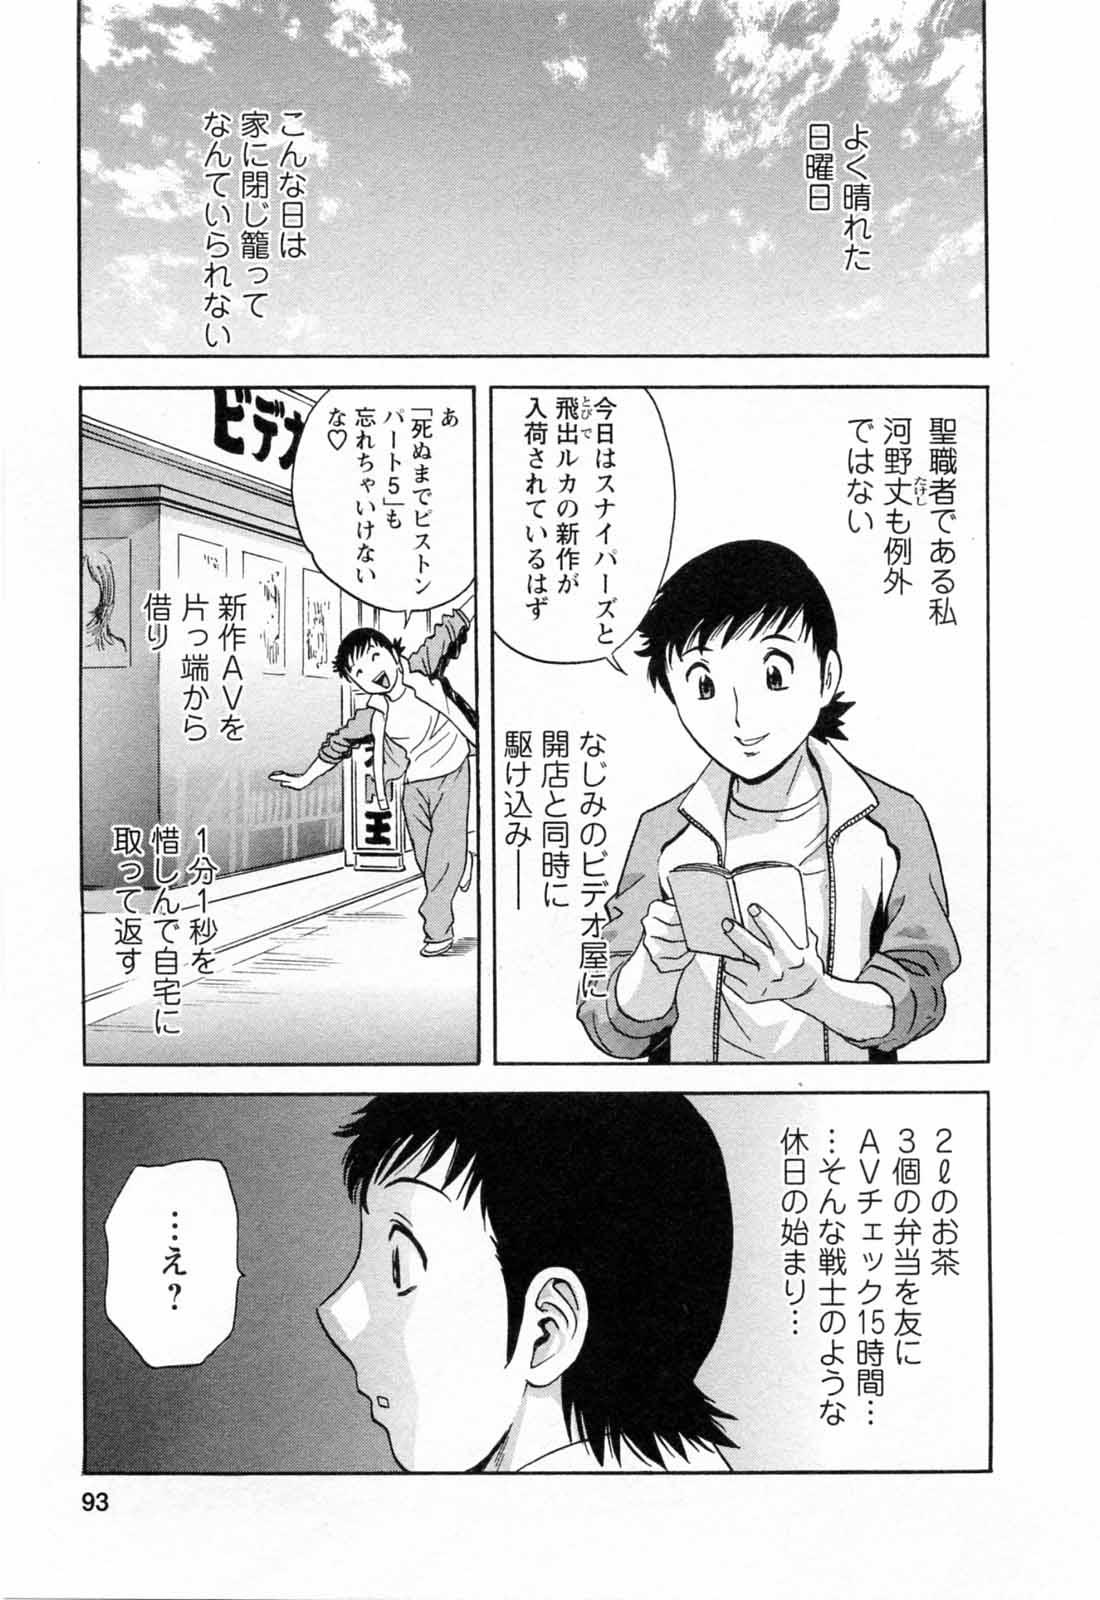 [Hidemaru] Mo-Retsu! Boin Sensei (Boing Boing Teacher) Vol.5 94